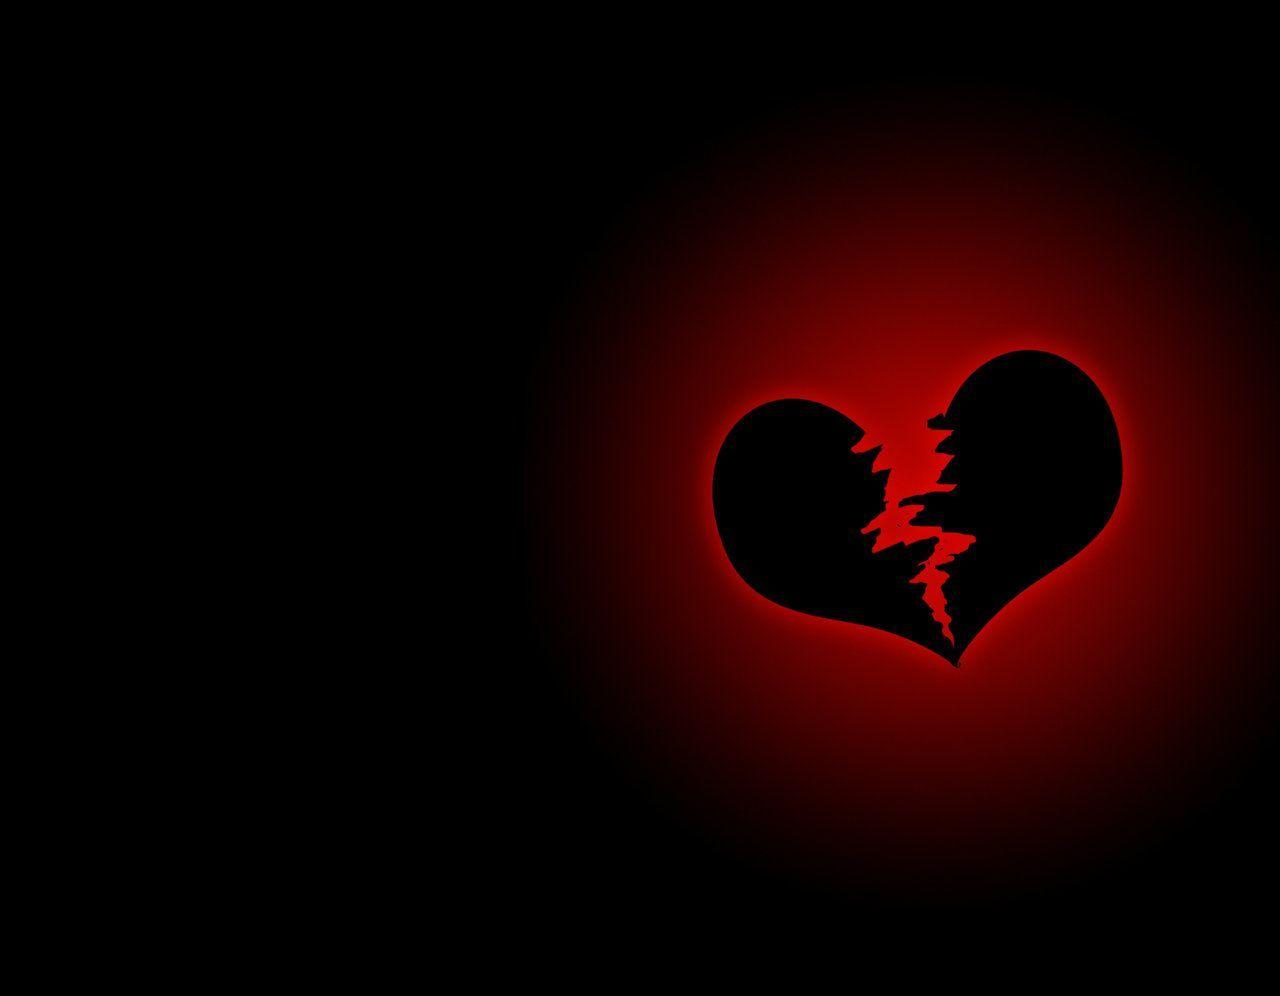 when Two Hearts is Break. Broken heart wallpaper, Broken heart picture, Heart wallpaper